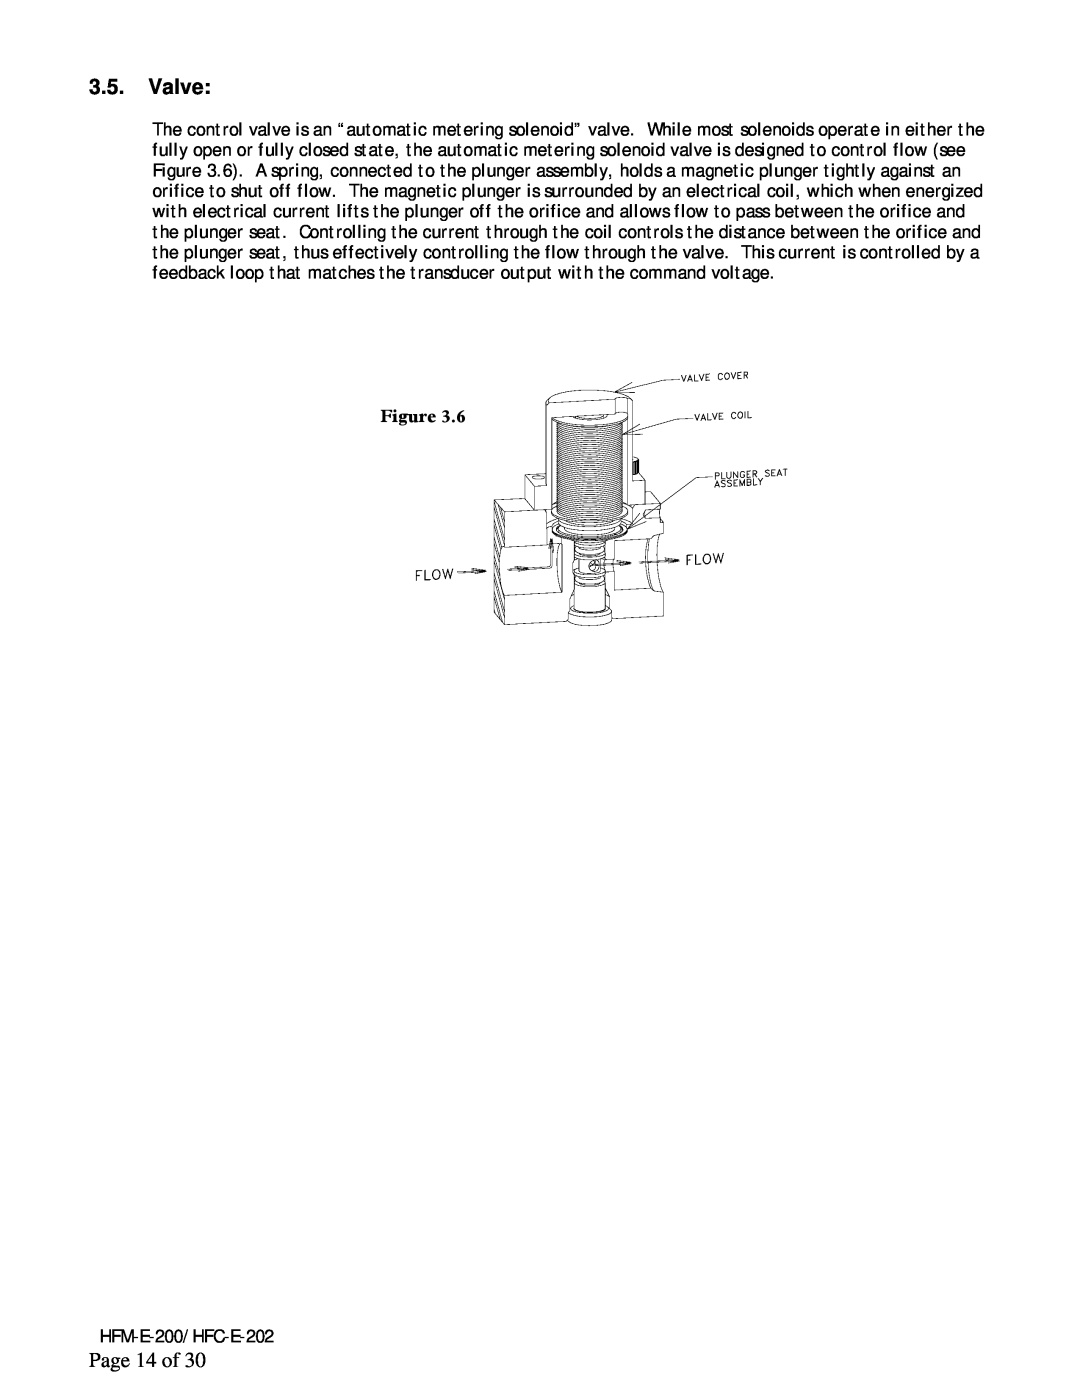 Teledyne HFC-E-202, HFM-E-200 instruction manual Valve, Page 14 of 